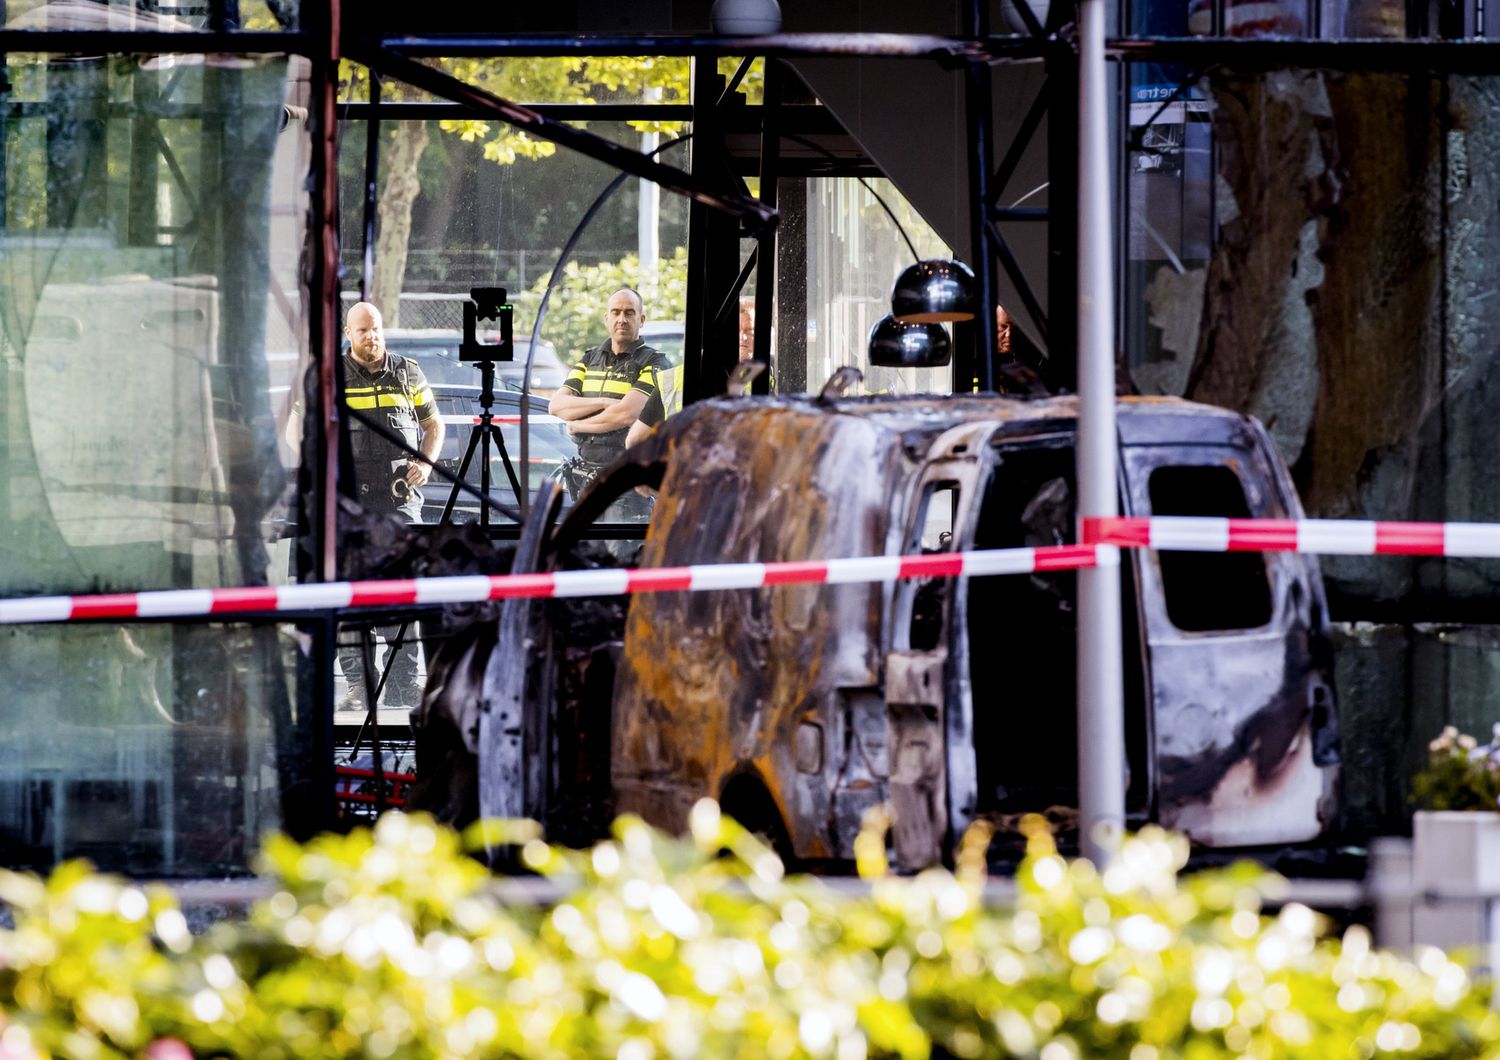 &nbsp;La carcassa del furgone lanciato contro la sede del quotidiano olandese Telegraaf e dato alle fiamme